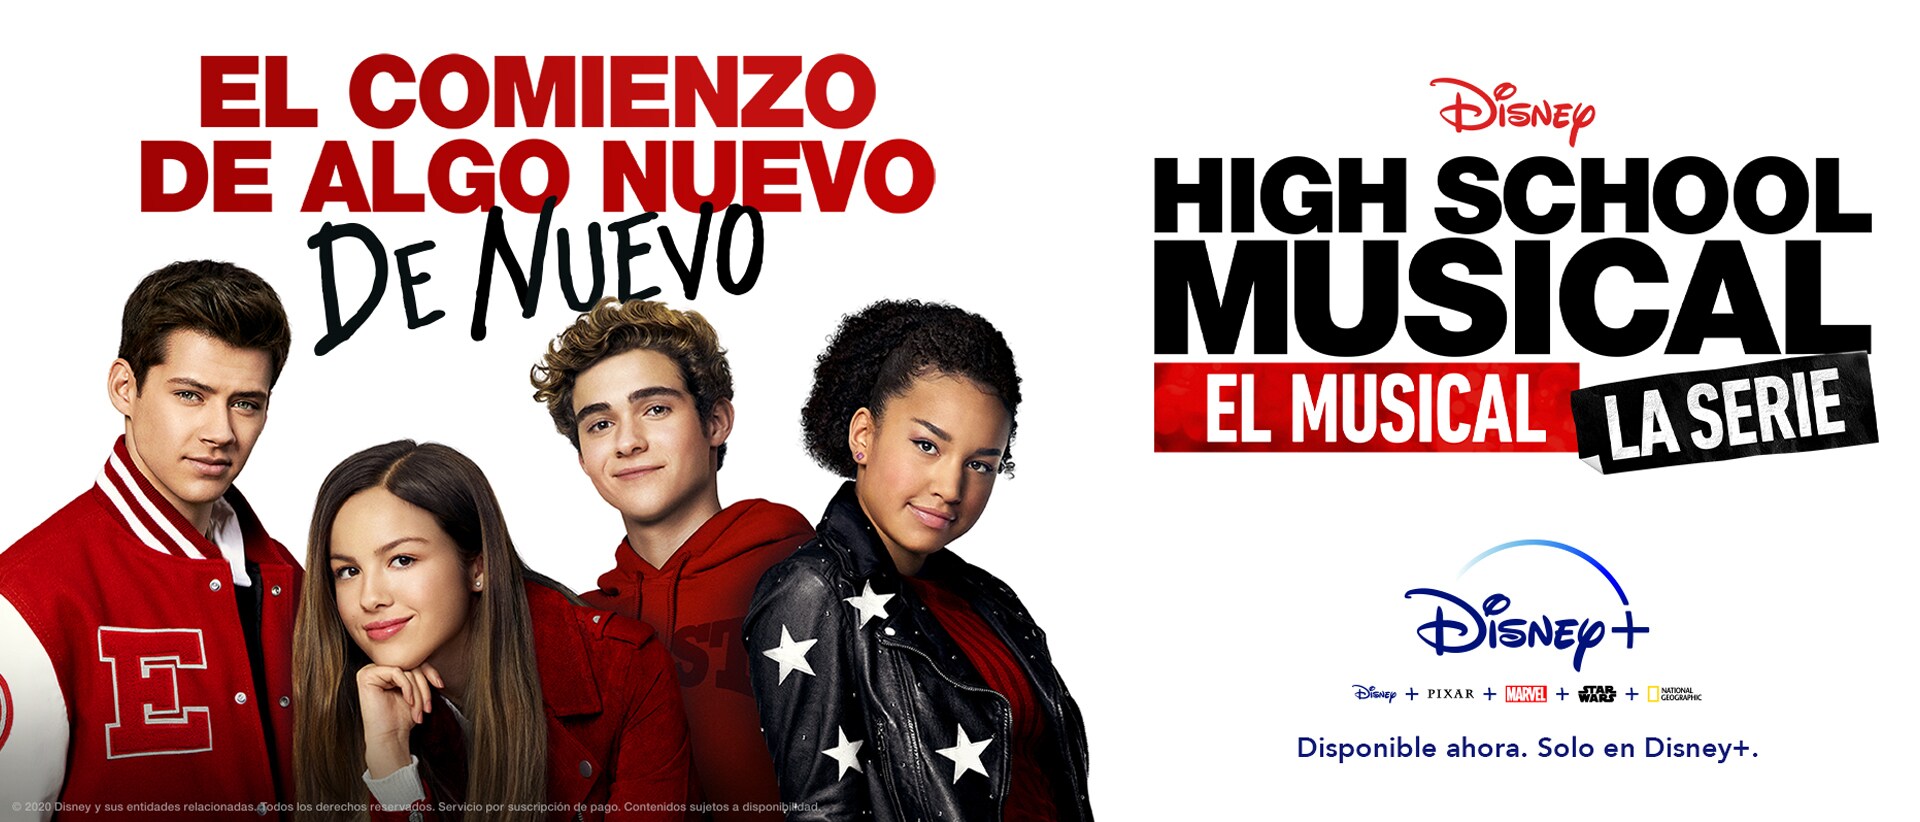 High School Musical: El musical: La serie | Disponible en Disney+ a partir del 17 de noviembre Draft